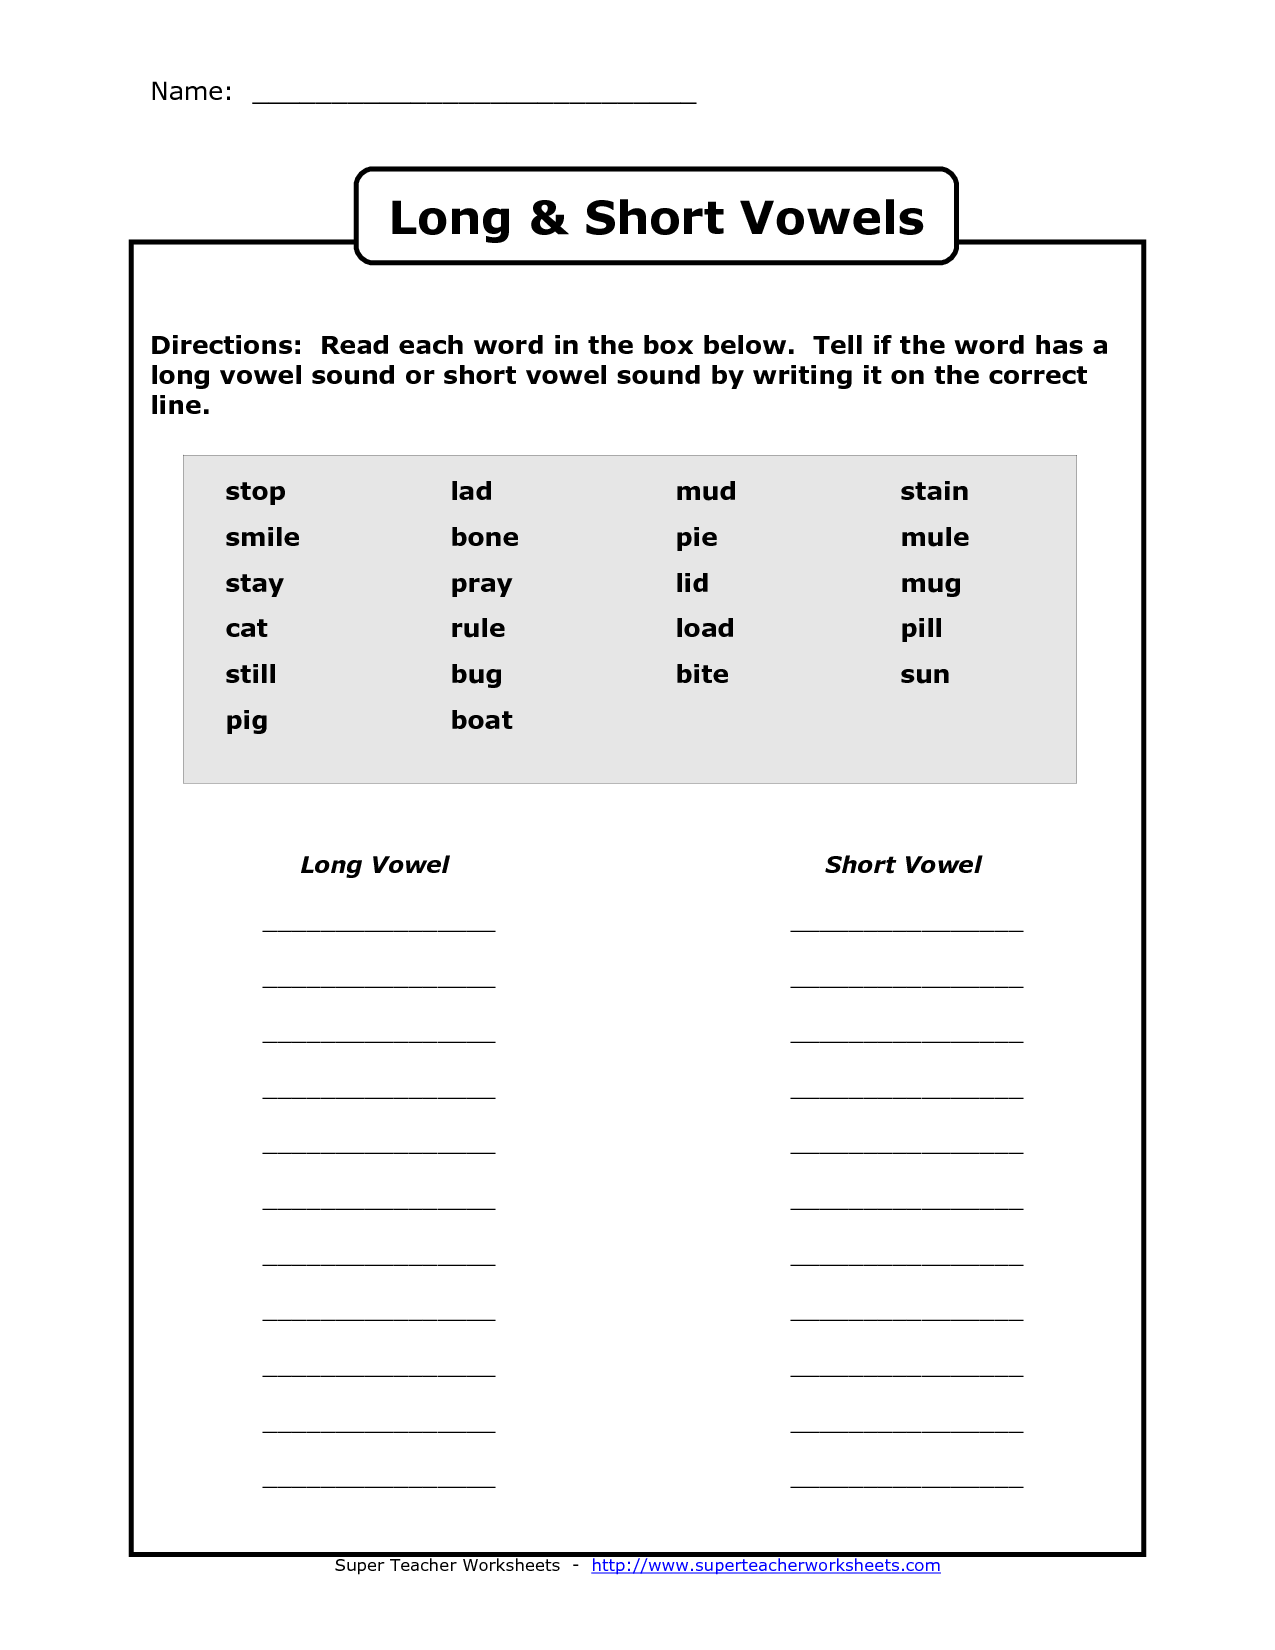 Long and Short Vowel Sounds Worksheet